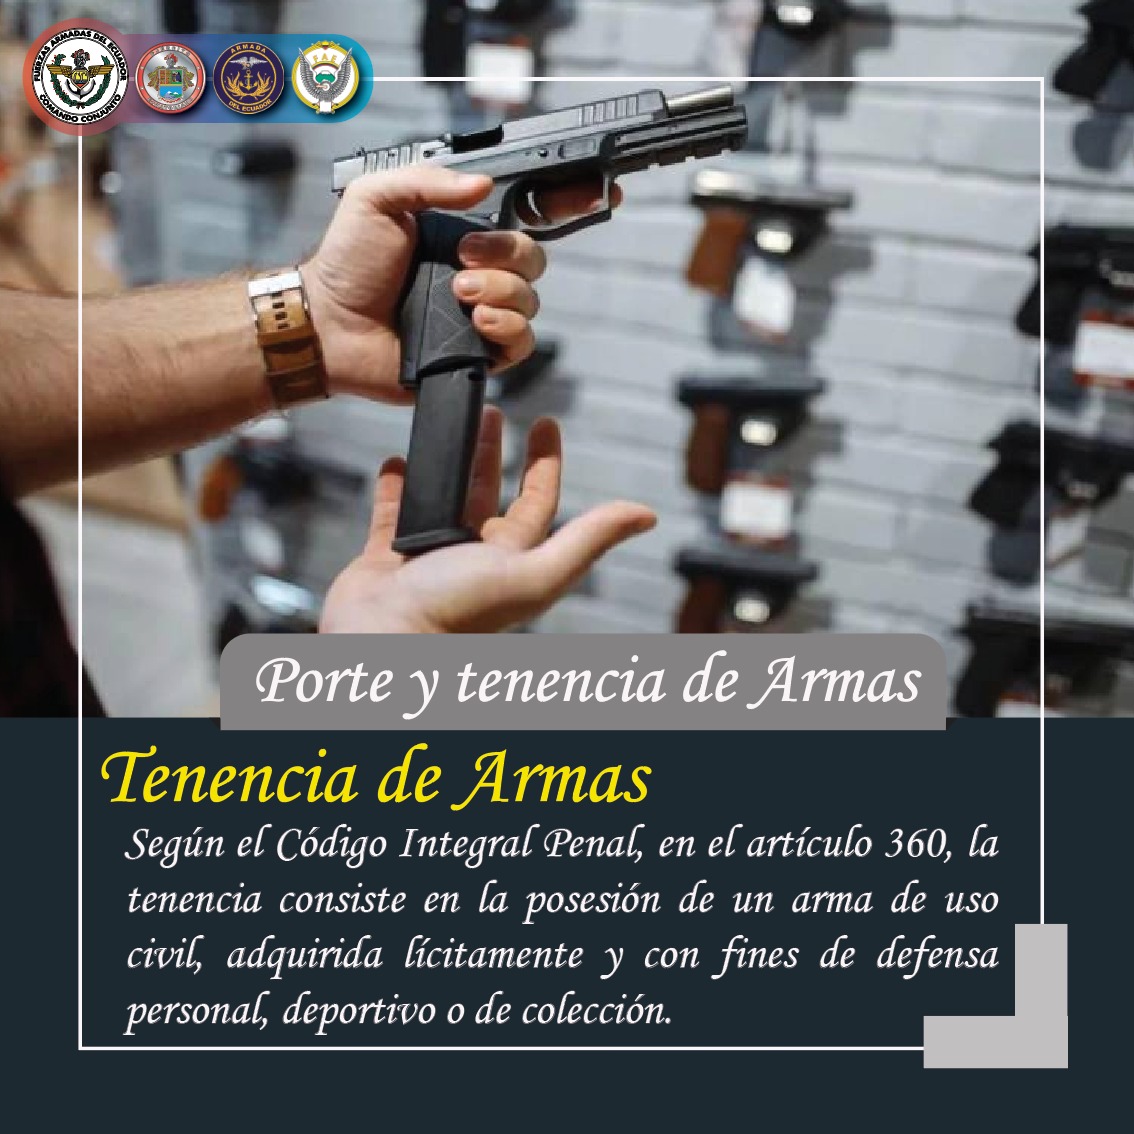 Fuerzas Armadas del Ecuador on X: ¡RECUERDA! 👉La tenencia de armas  consiste en la posesión de un arma de uso civil, adquirida lícitamente y  con fines de defensa personal, deportivo o de